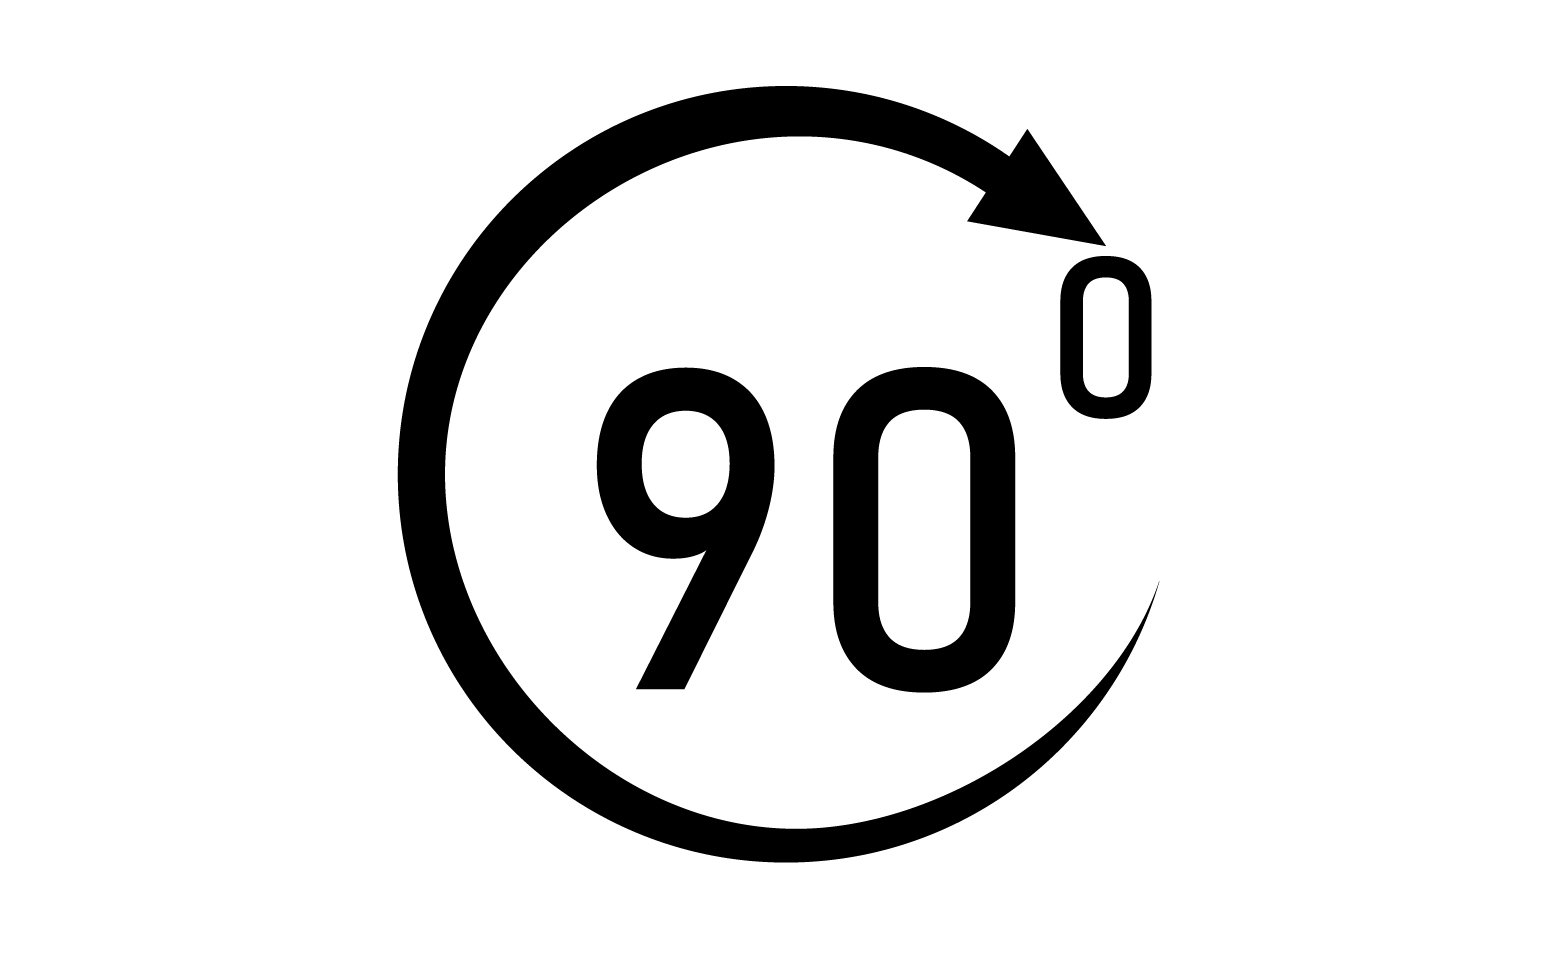 90 degree angle rotation icon symbol logo v3